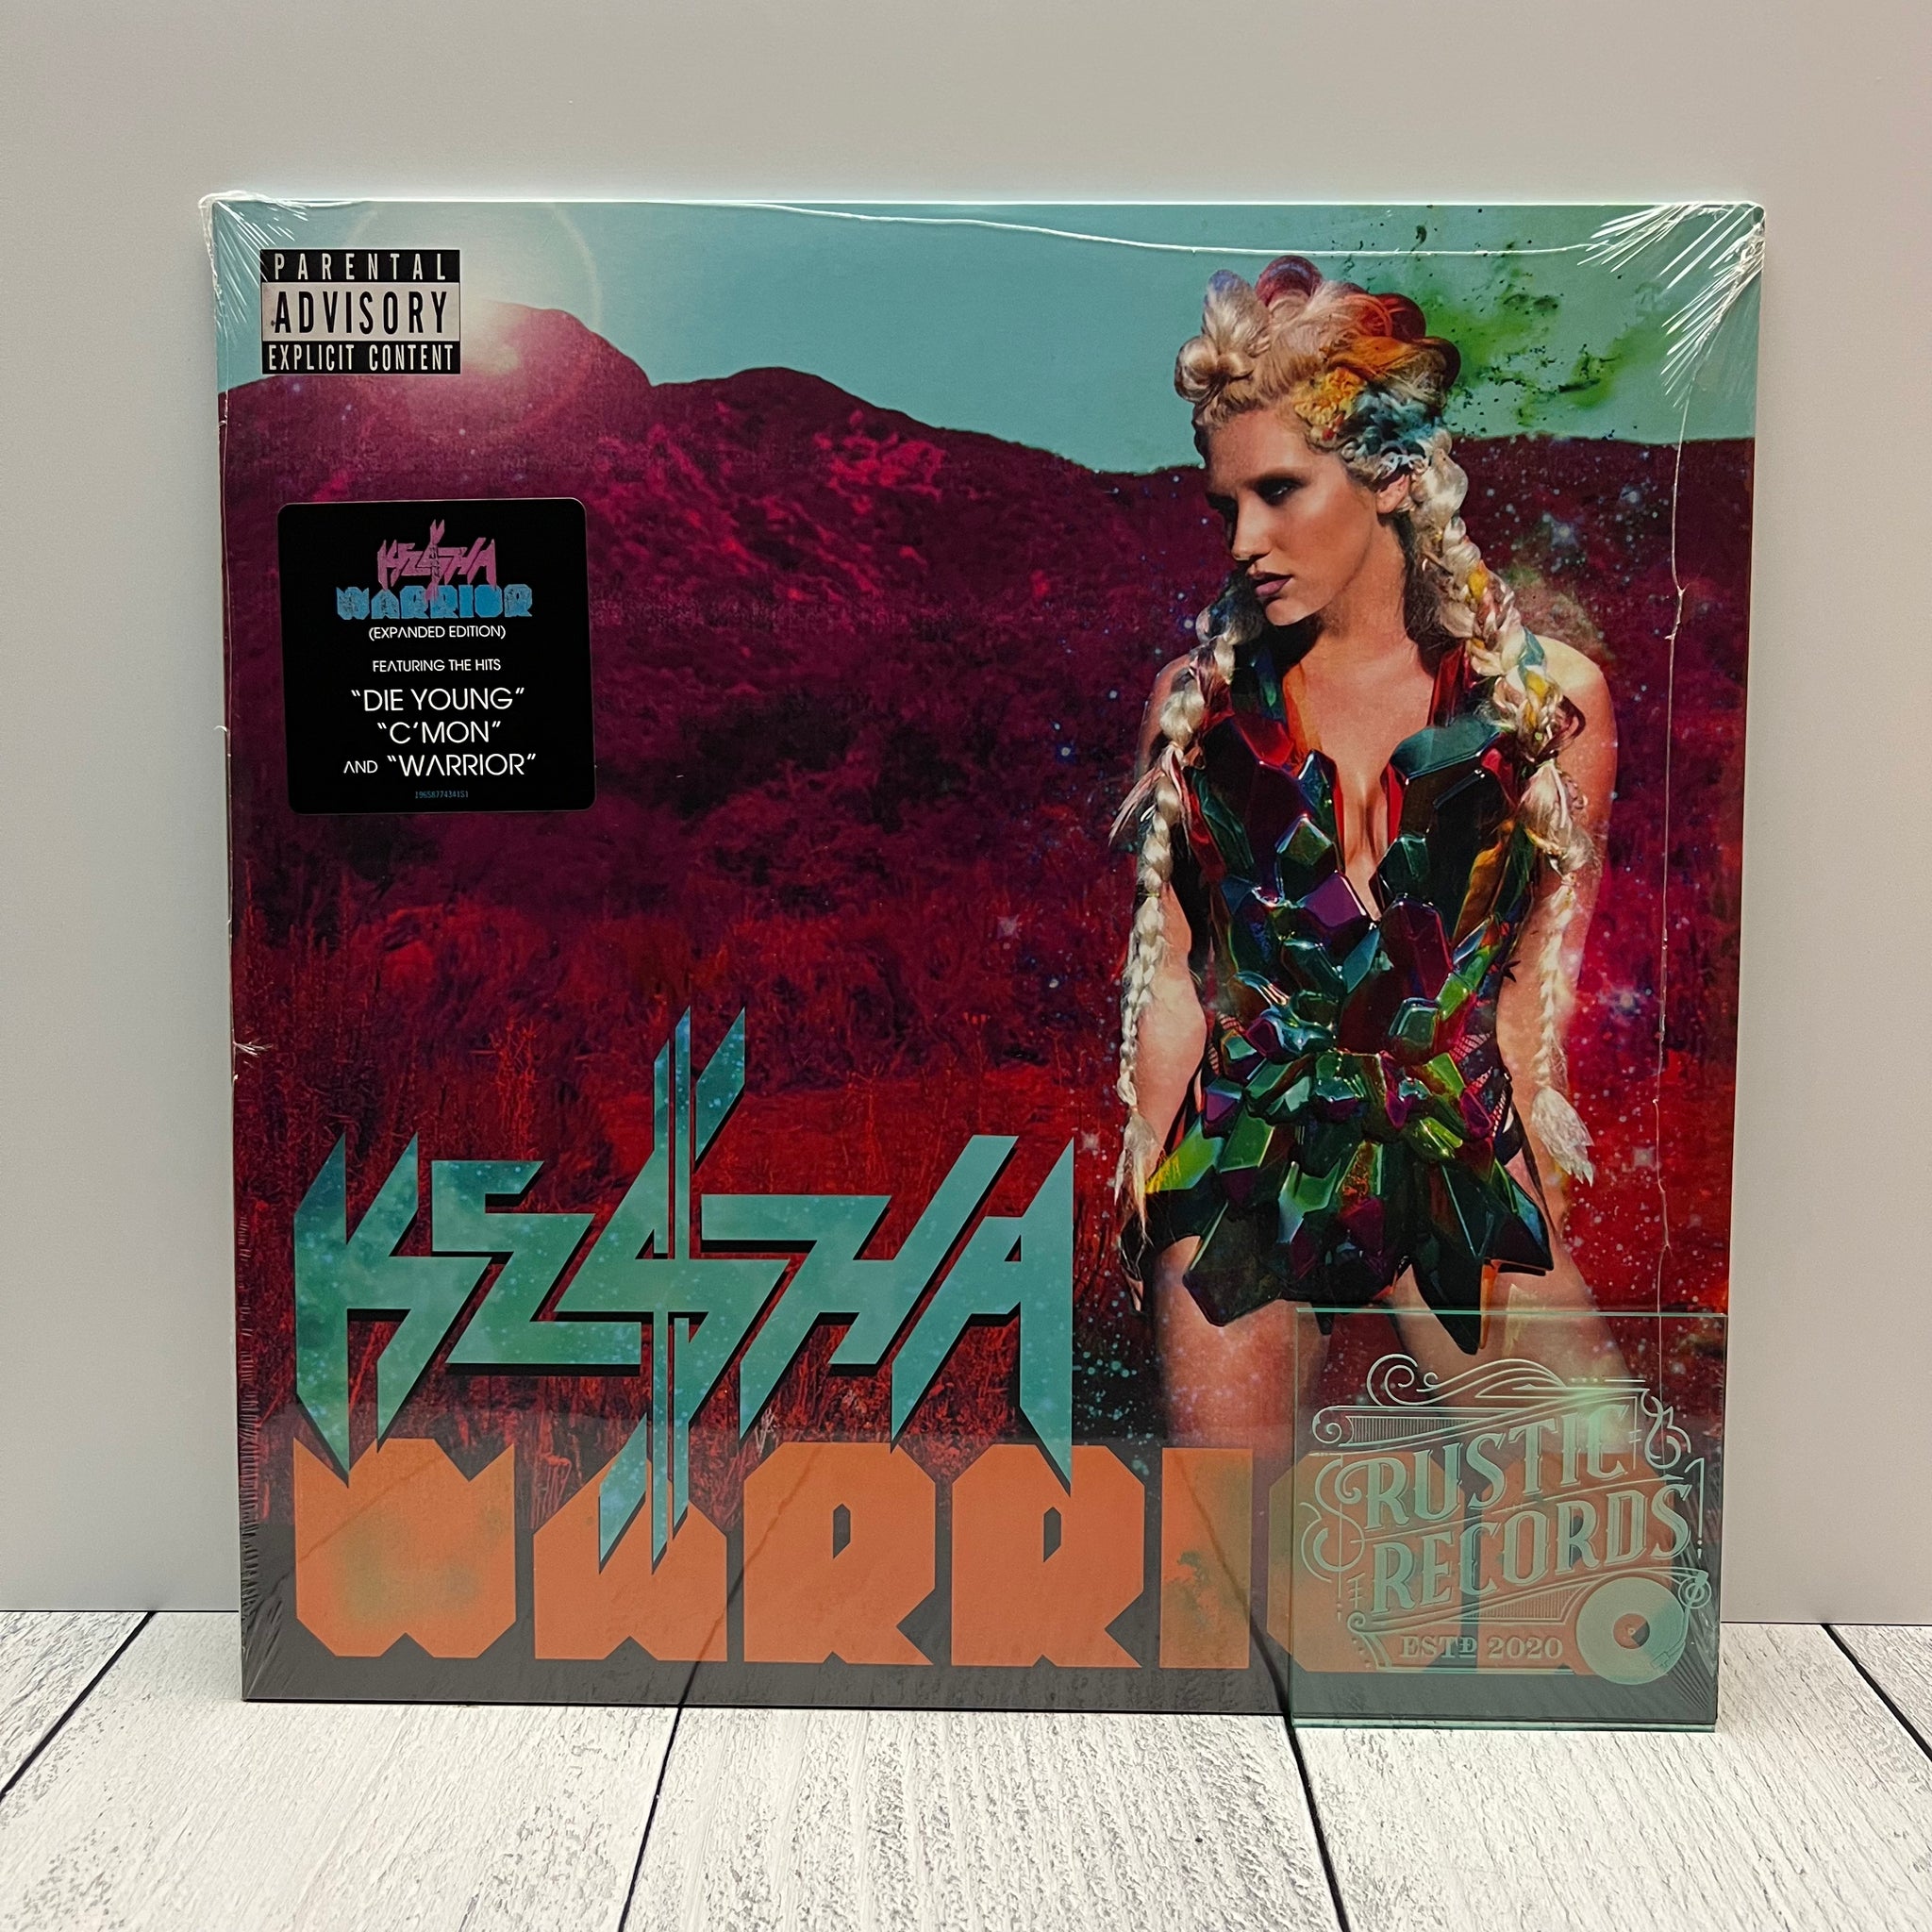 Kesha - Warrior